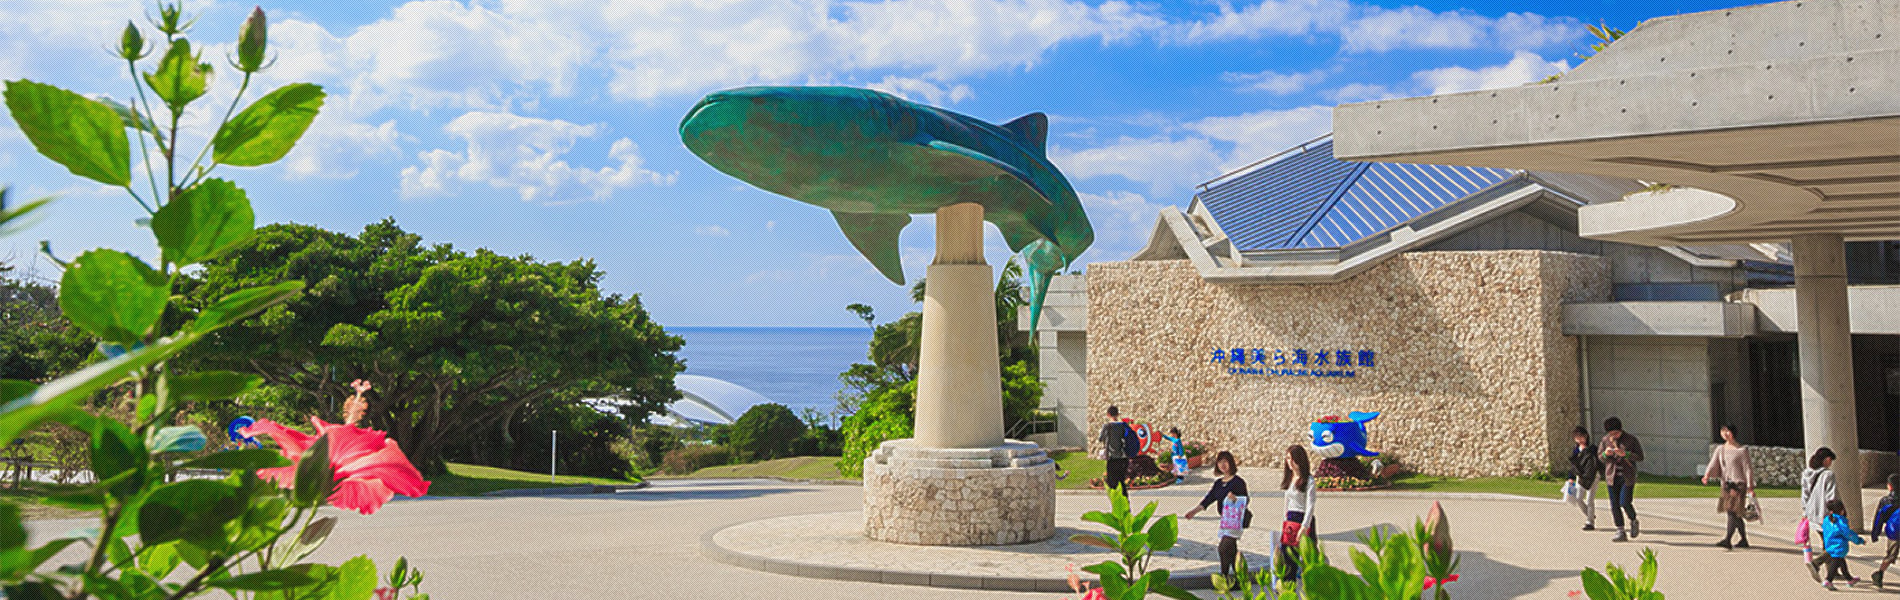 ご利用案内 沖縄美ら海水族館 沖縄の美ら海を 次の世代へ